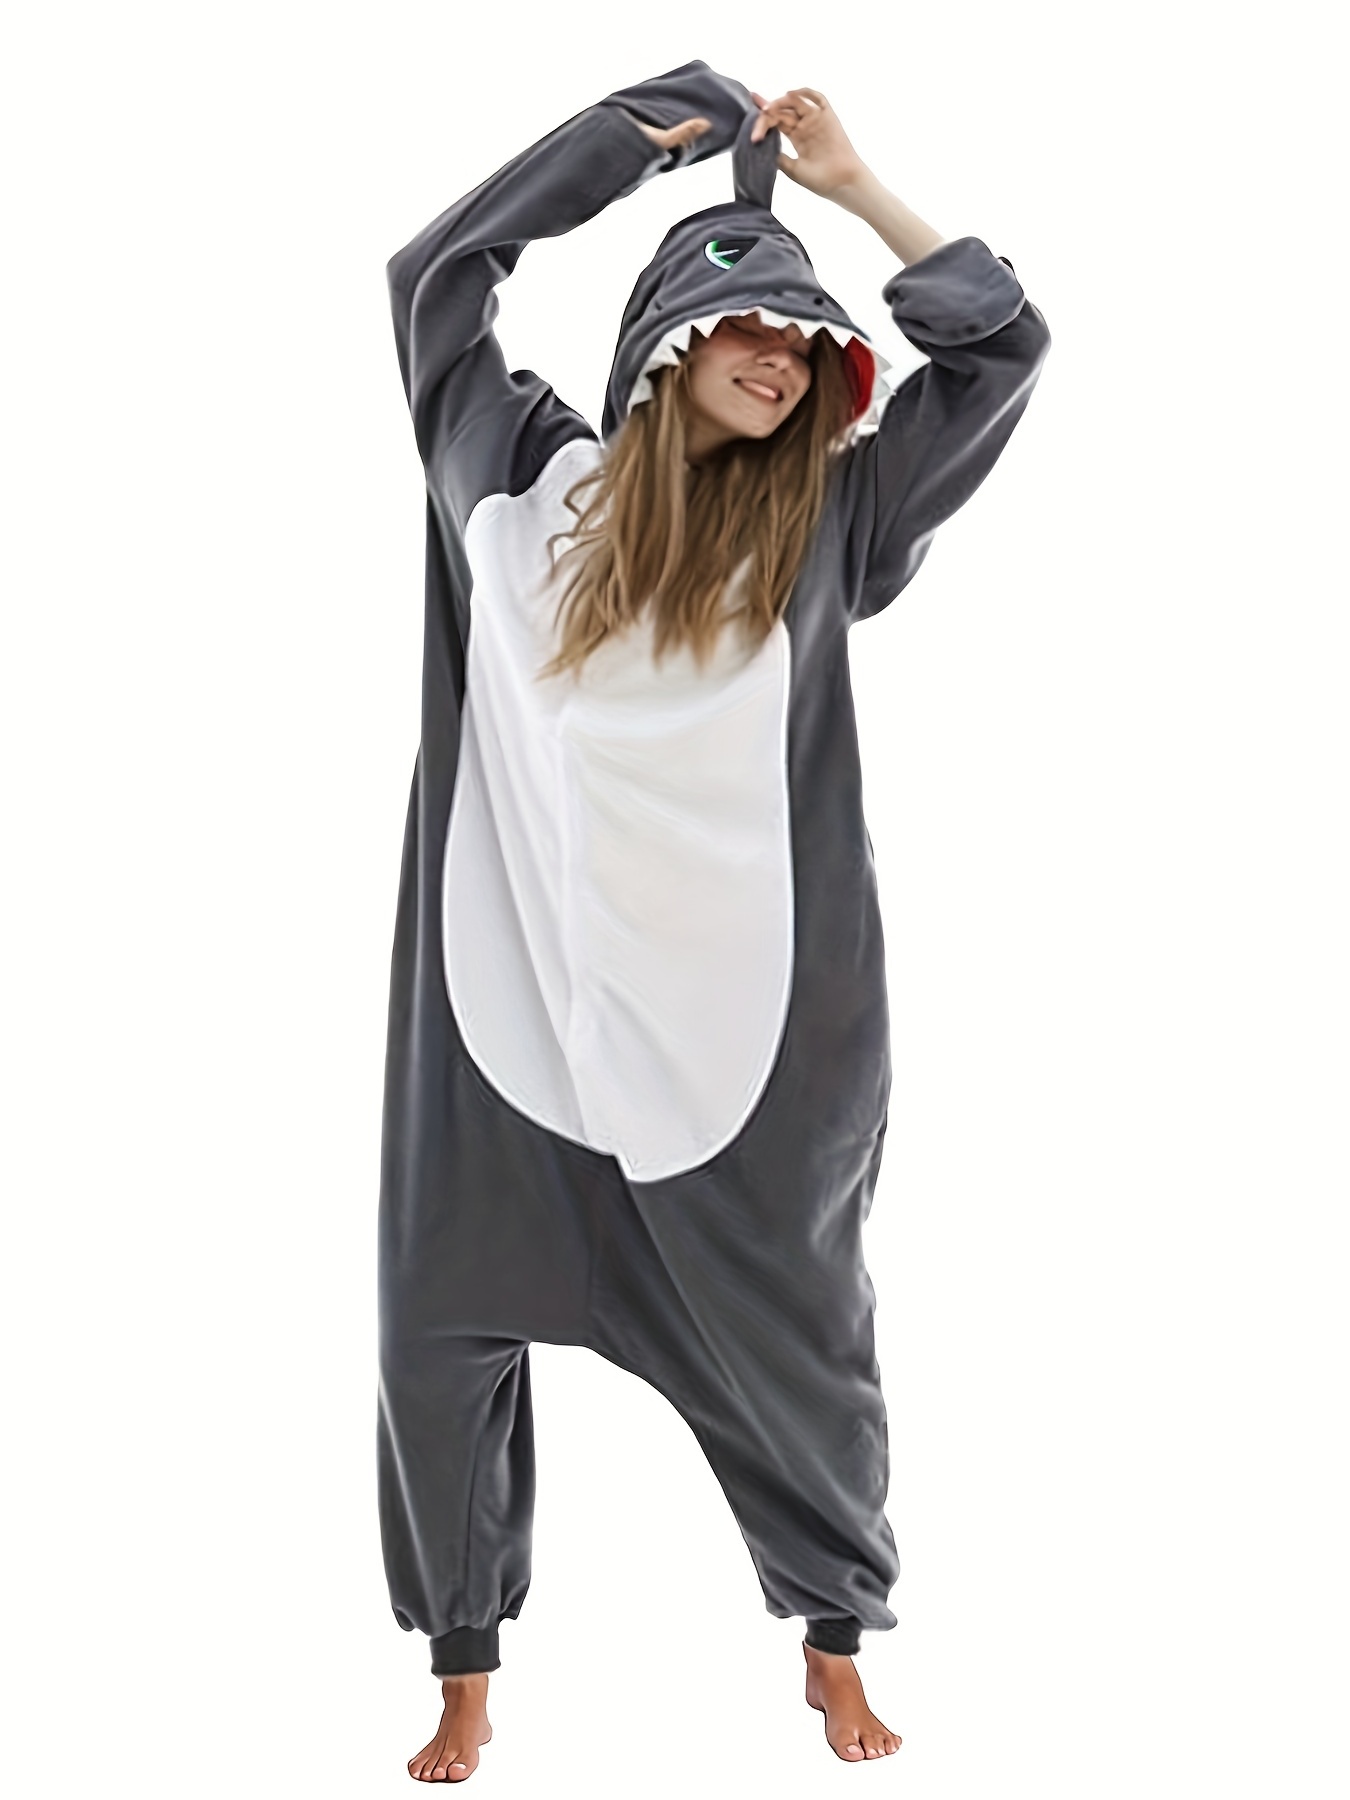 Pijamas de tiburón gris para adultos, ropa de dormir, Mono de